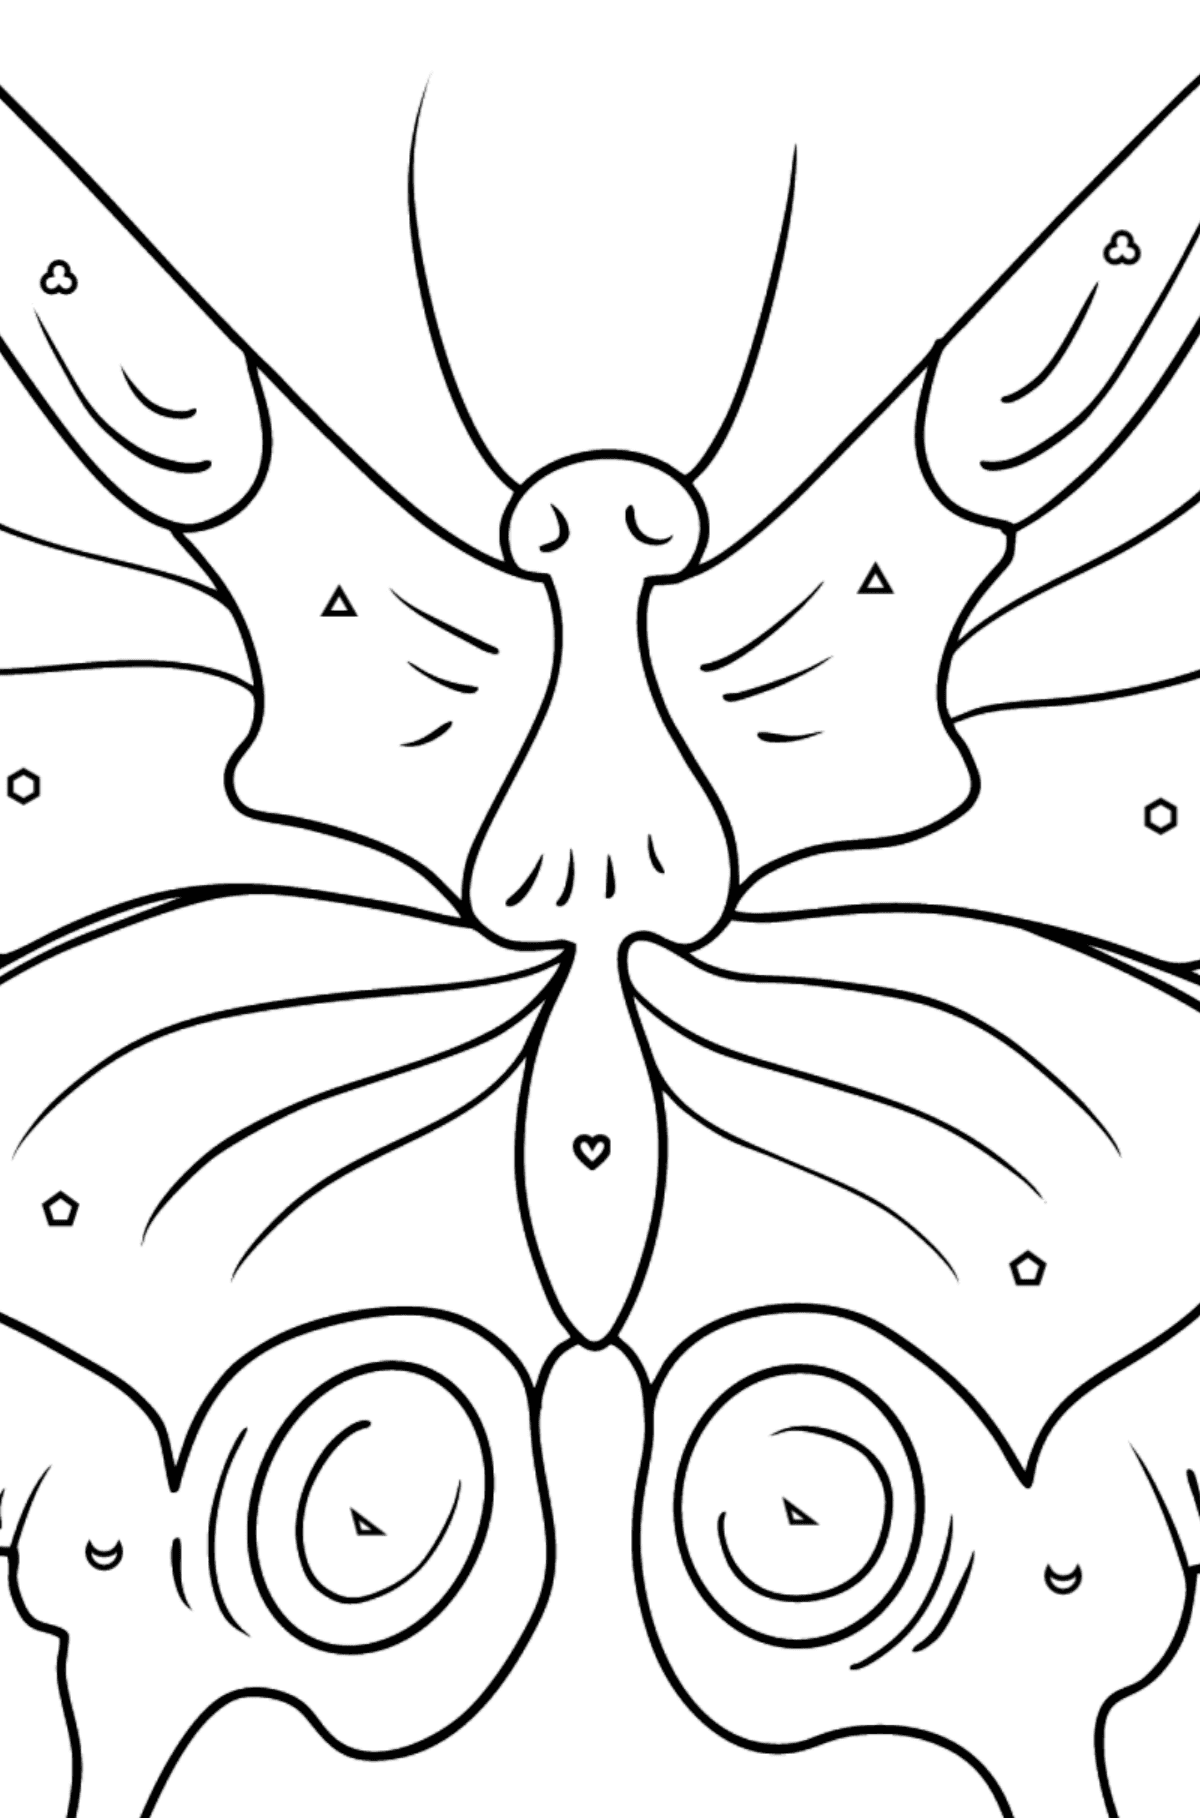 Kleurplaat zwaluwstaartvlinder - Kleuren met geometrische figuren voor kinderen